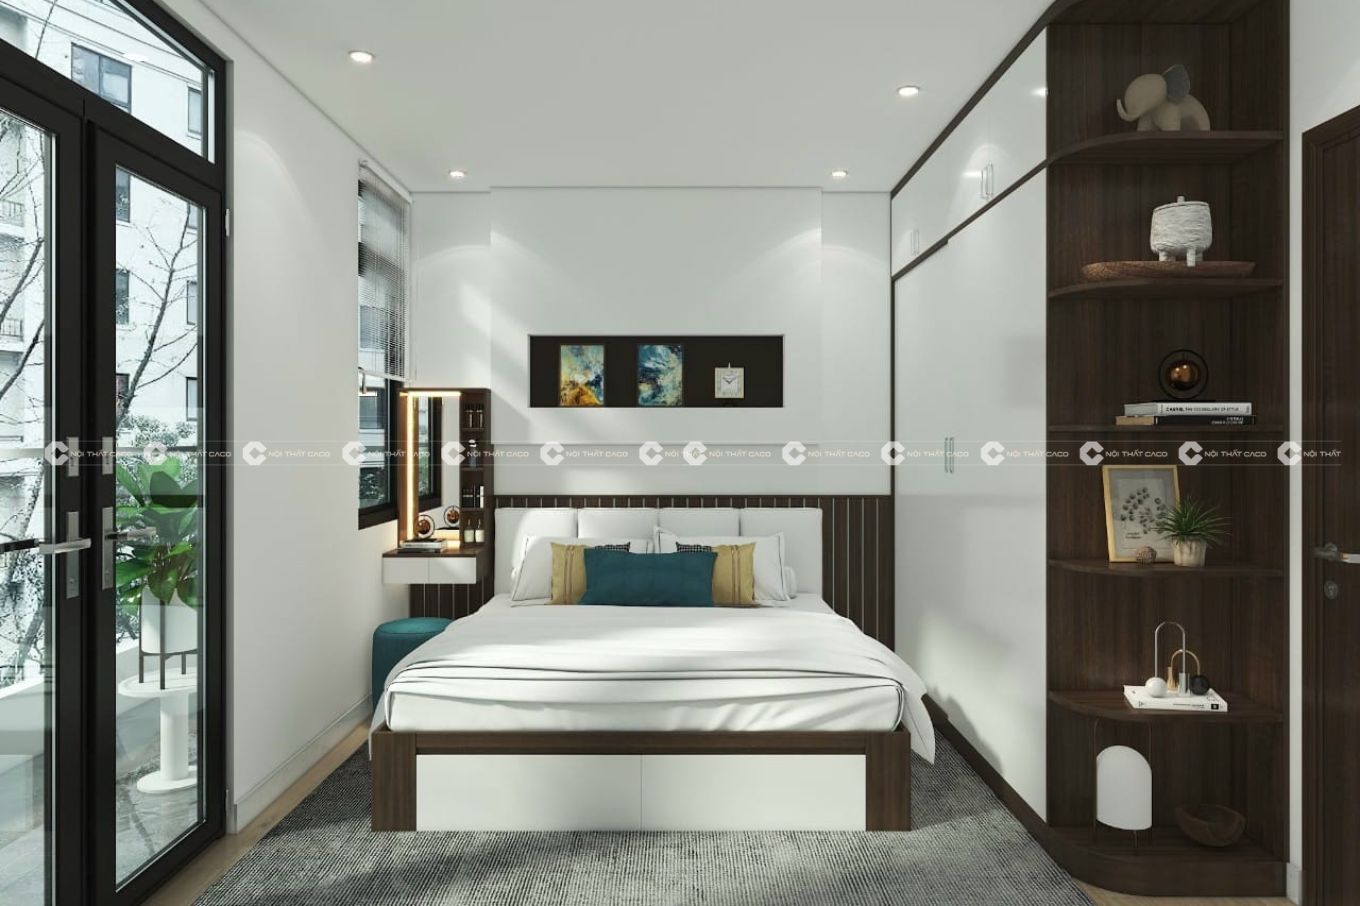 Nếu bạn muốn tận hưởng giấc ngủ như hoàng tử hoặc công chúa, thiết kế phòng ngủ sang trọng chính là lựa chọn tuyệt vời. Với sự kết hợp hoàn hảo giữa đồ nội thất và trang trí đẳng cấp, không gian ngủ sẽ trở nên ấm áp, đẹp mắt hơn bao giờ hết.